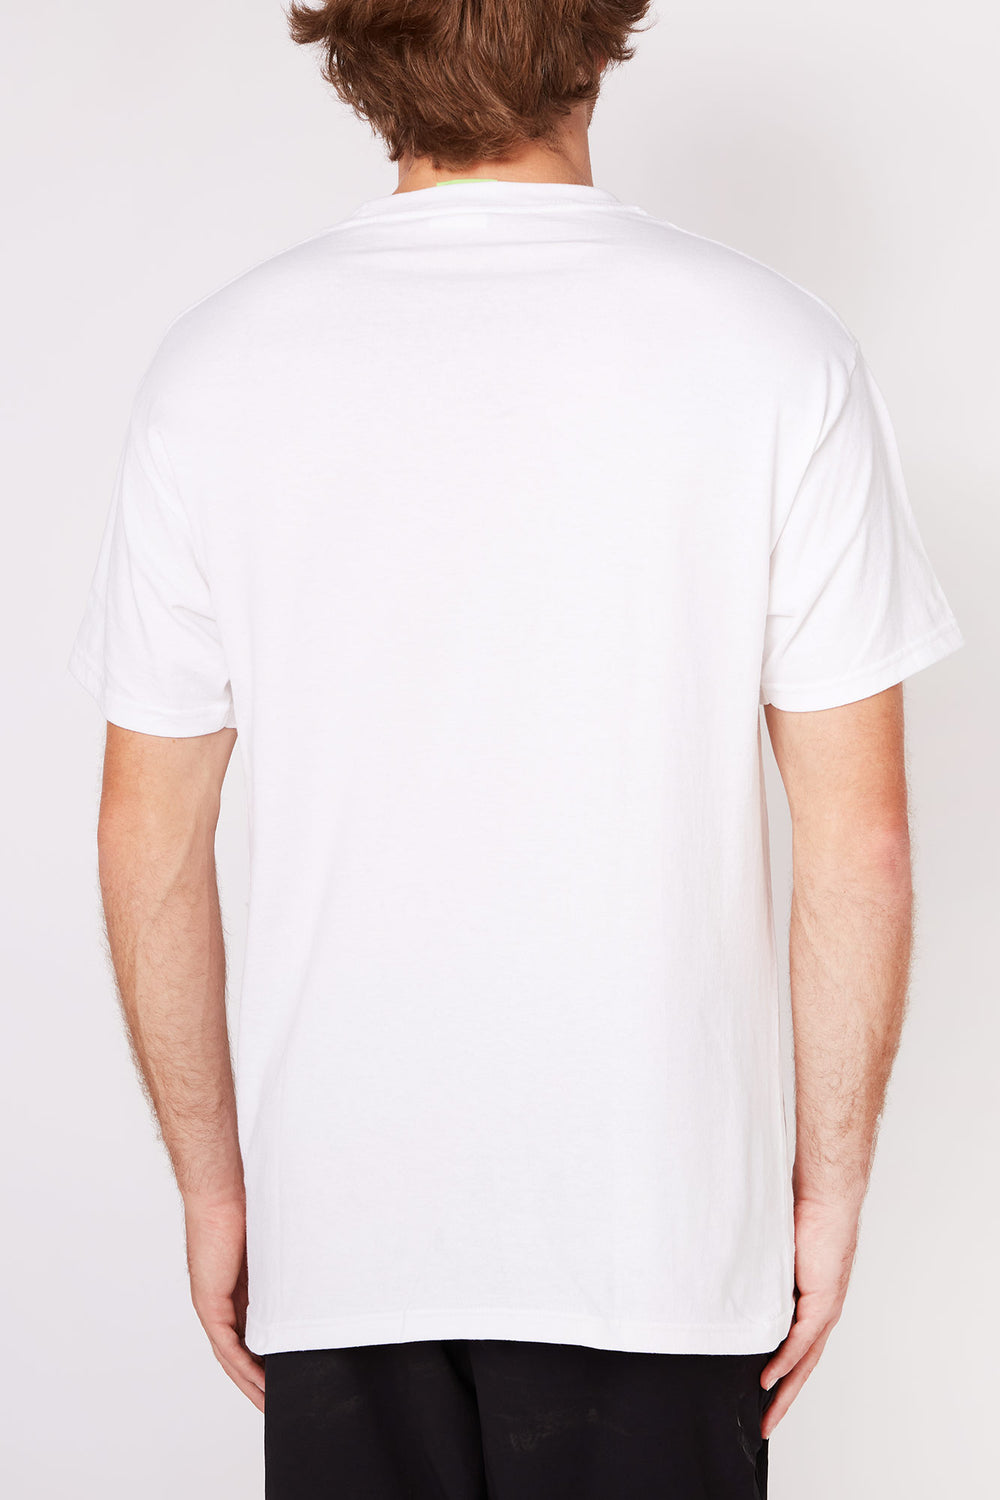 HUF Presence T-Shirt White